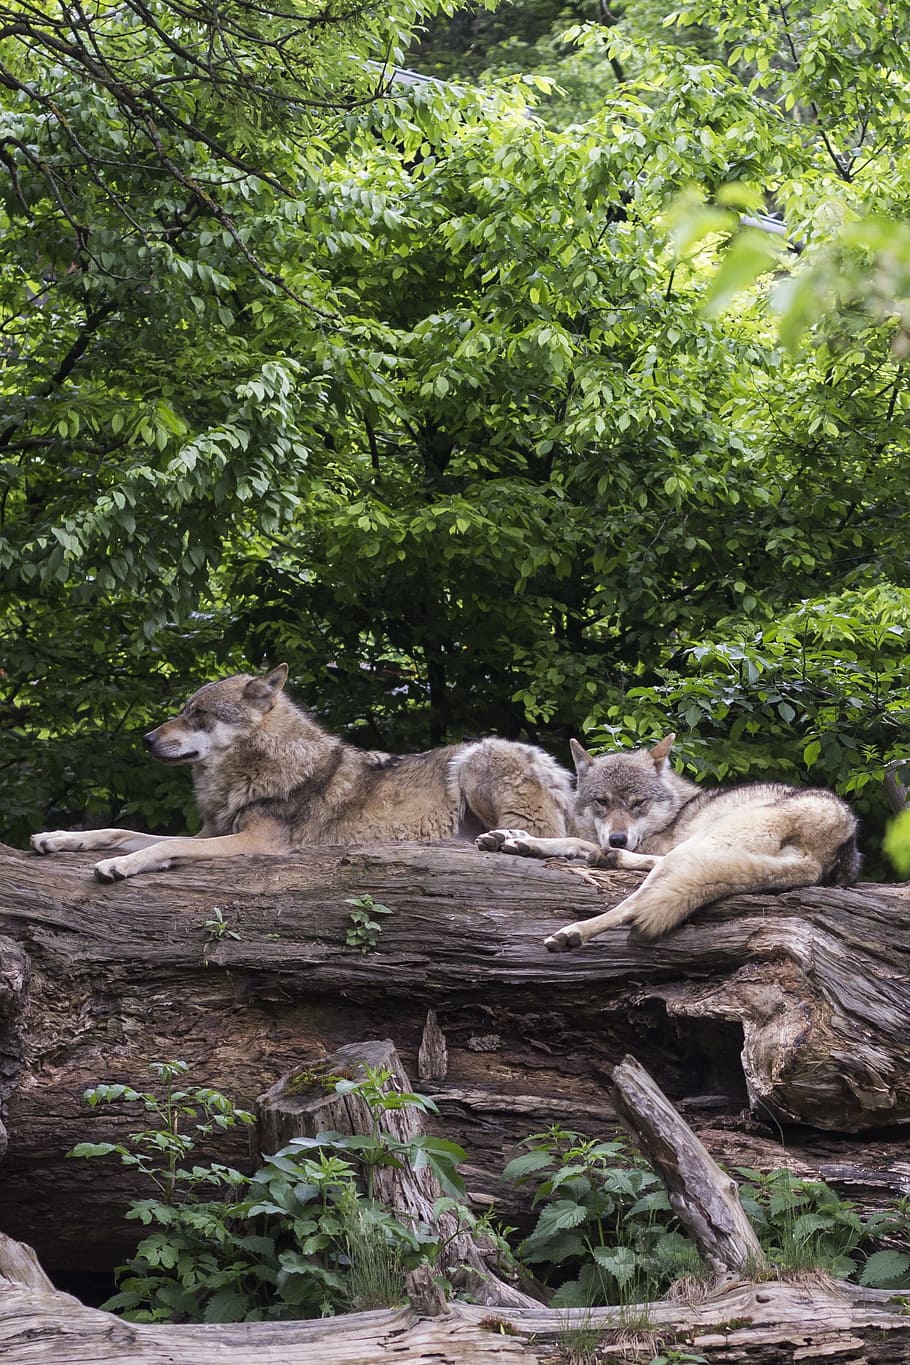 mentindo, log de madeira, lobos, lobo europeu, lobo, lobos europeus, canis lupus, predador, animais dois lobos, dormente